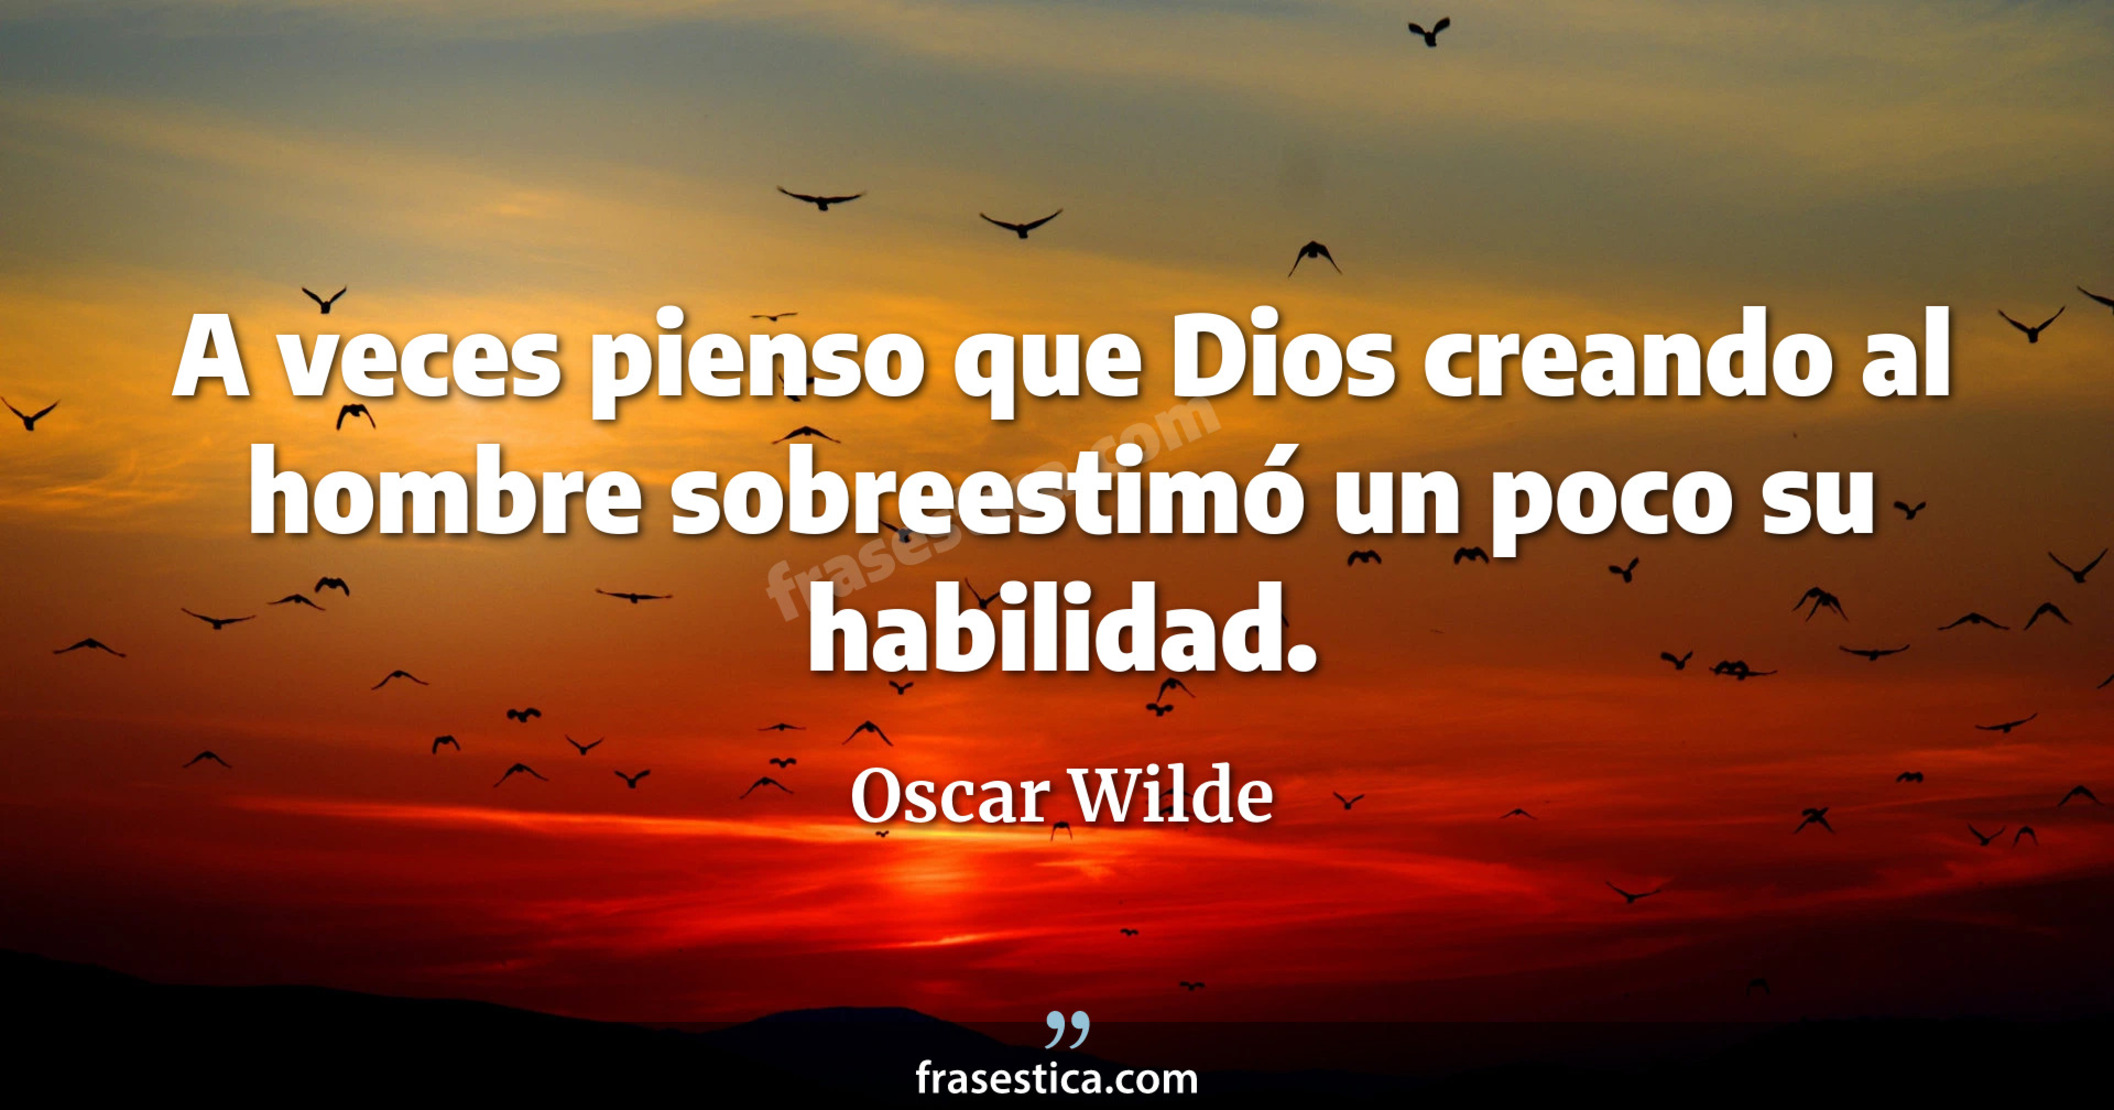 A veces pienso que Dios creando al hombre sobreestimó un poco su habilidad. - Oscar Wilde